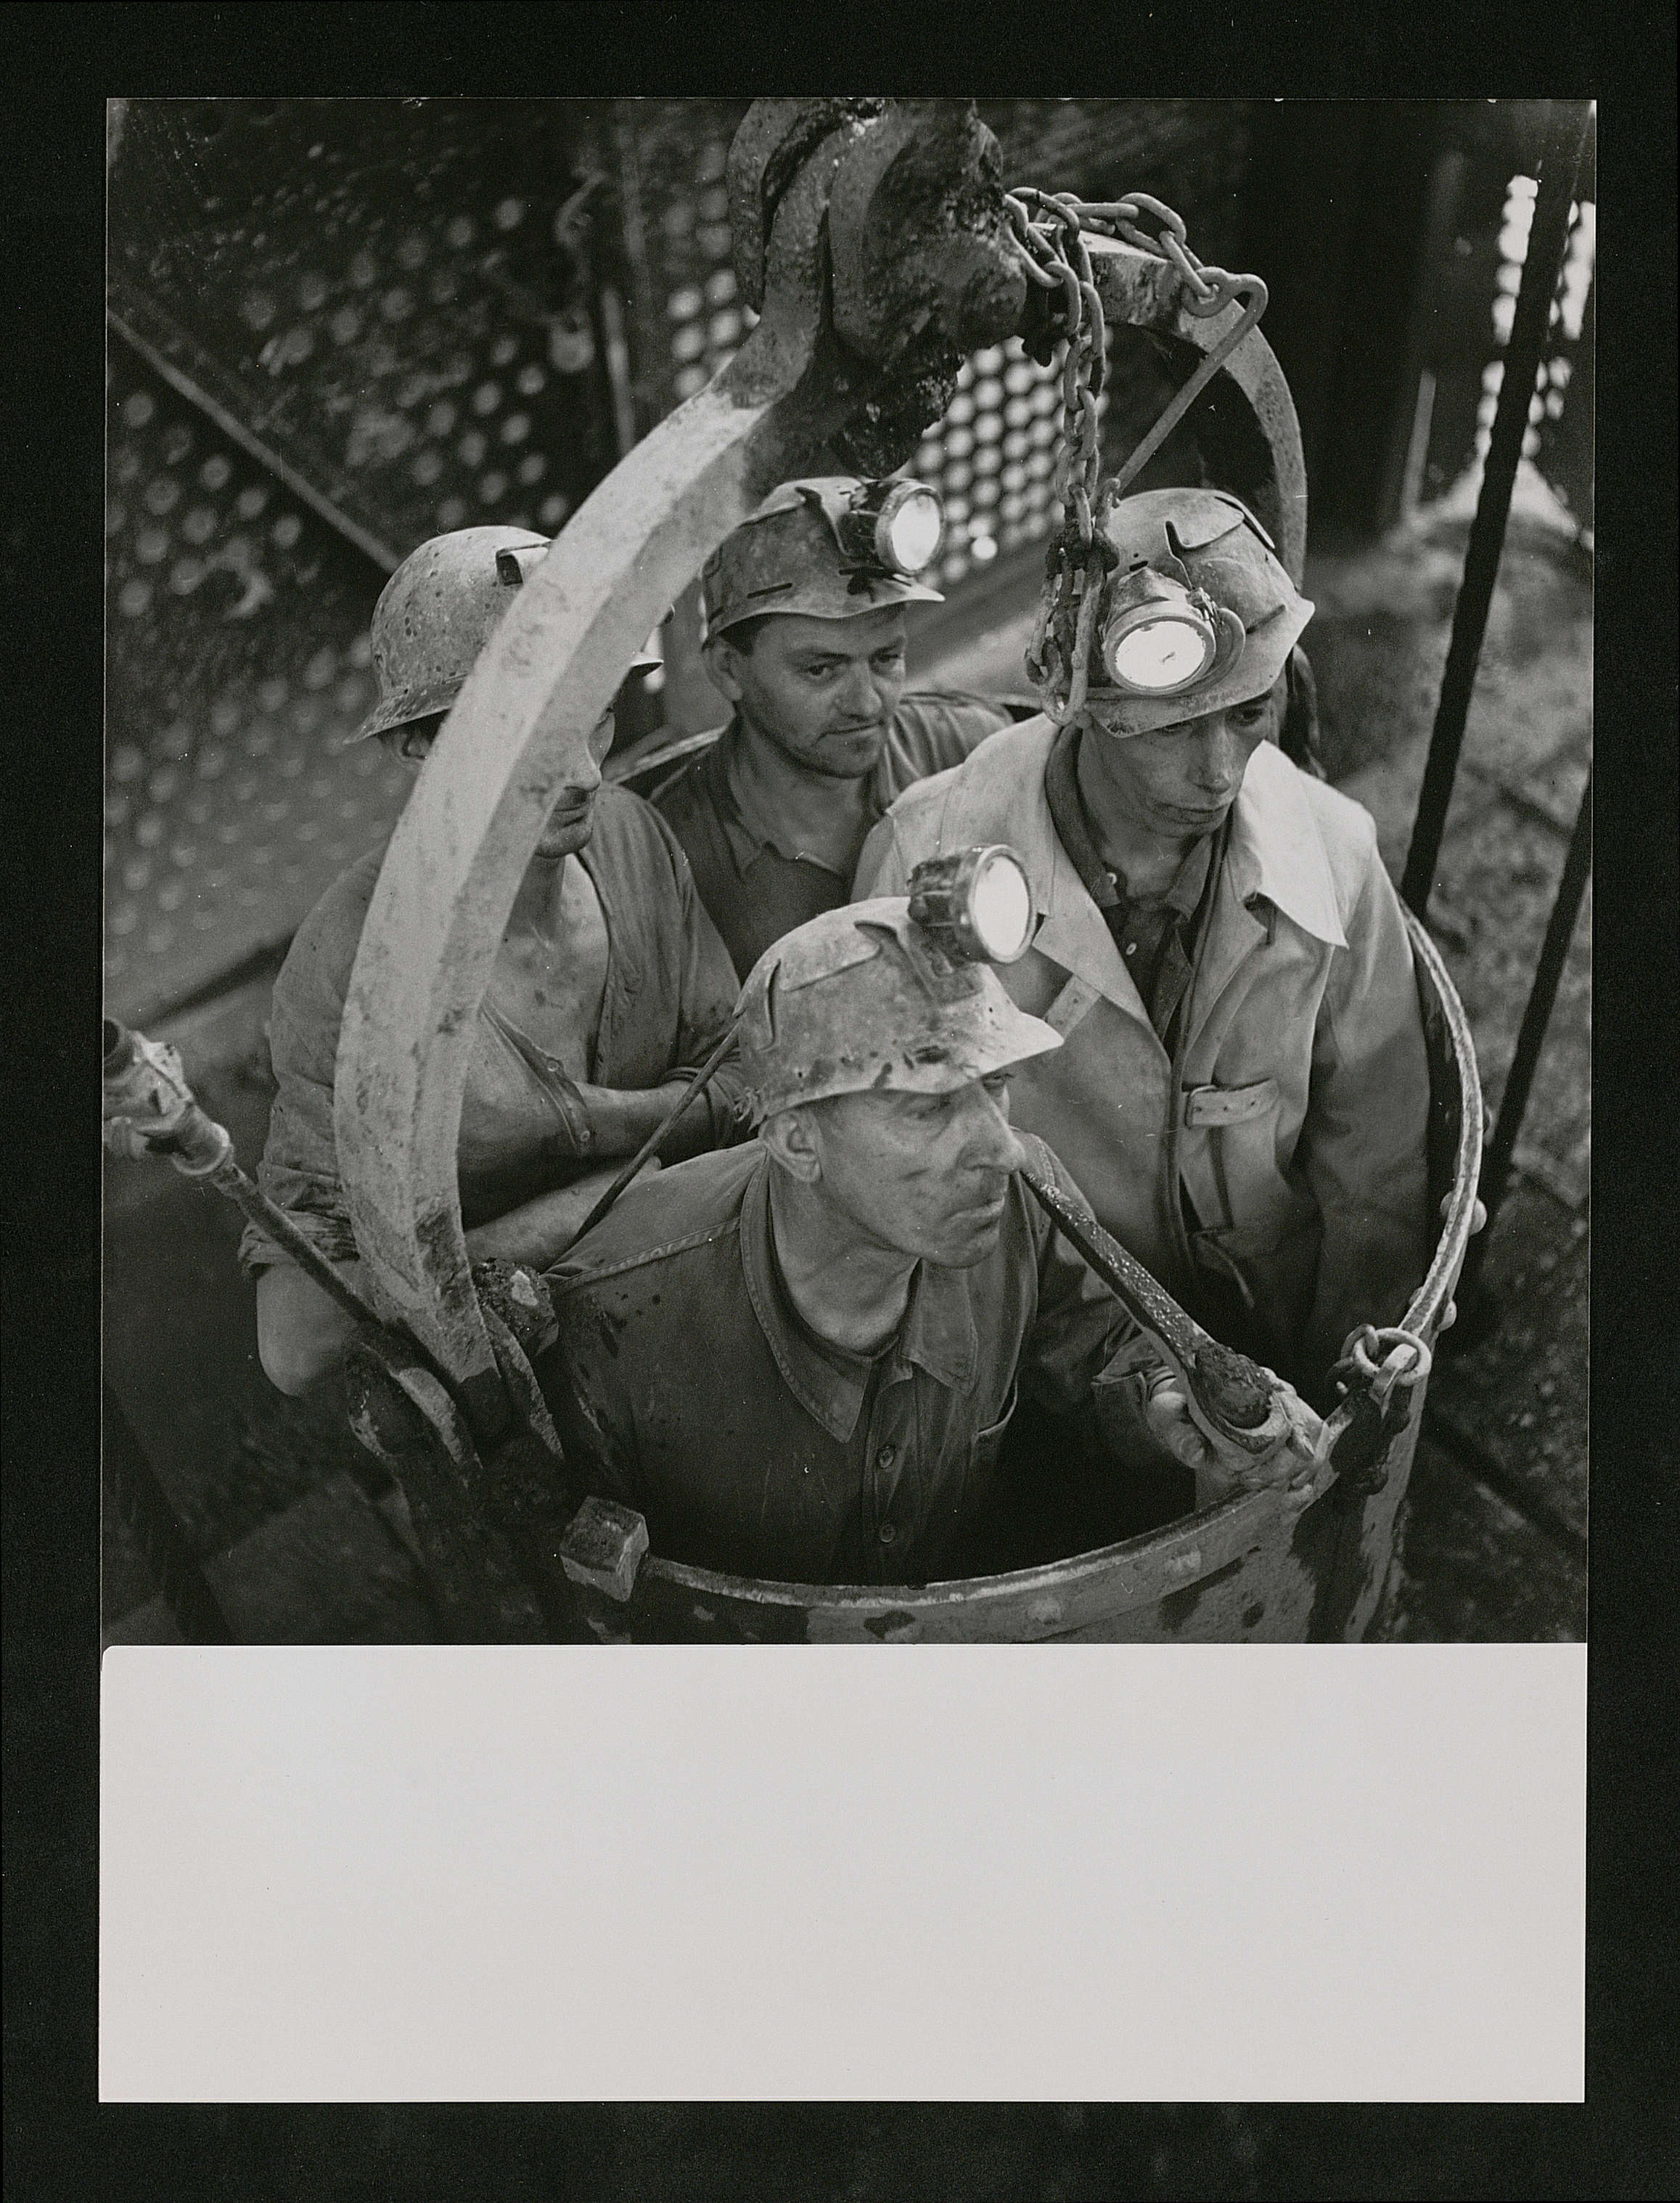 Groupe de mineurs lors de leur descente au fond de la mine : tirage photographique, Bassin de Lorraine, vers 1947.